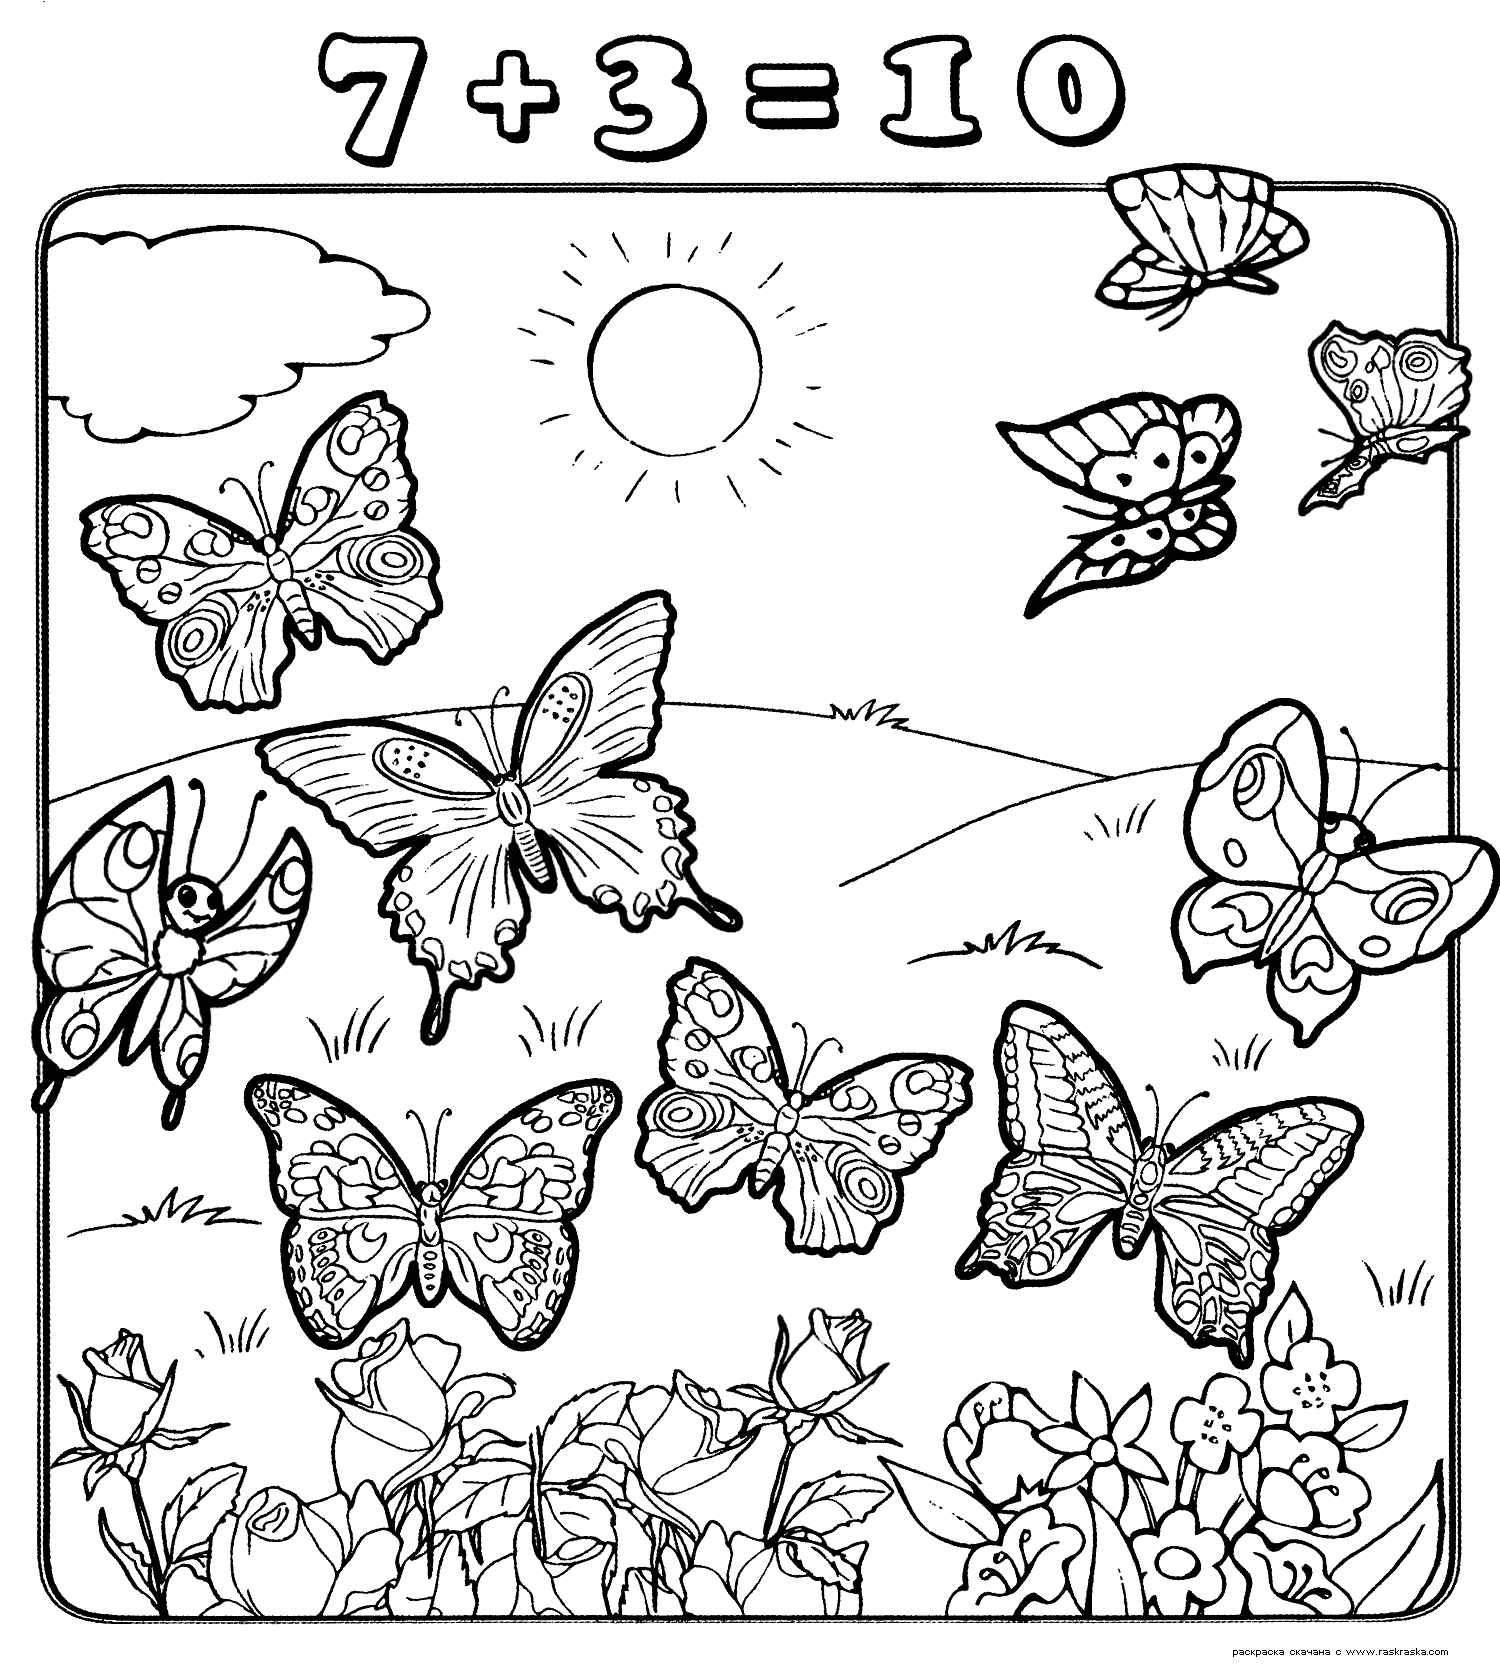 Раскраска десять бабочек. раскраска семь плюс три, раскраска с цифрами для детей, обучение детей счеты, учимся считать, бабочка, цветы, солнце 